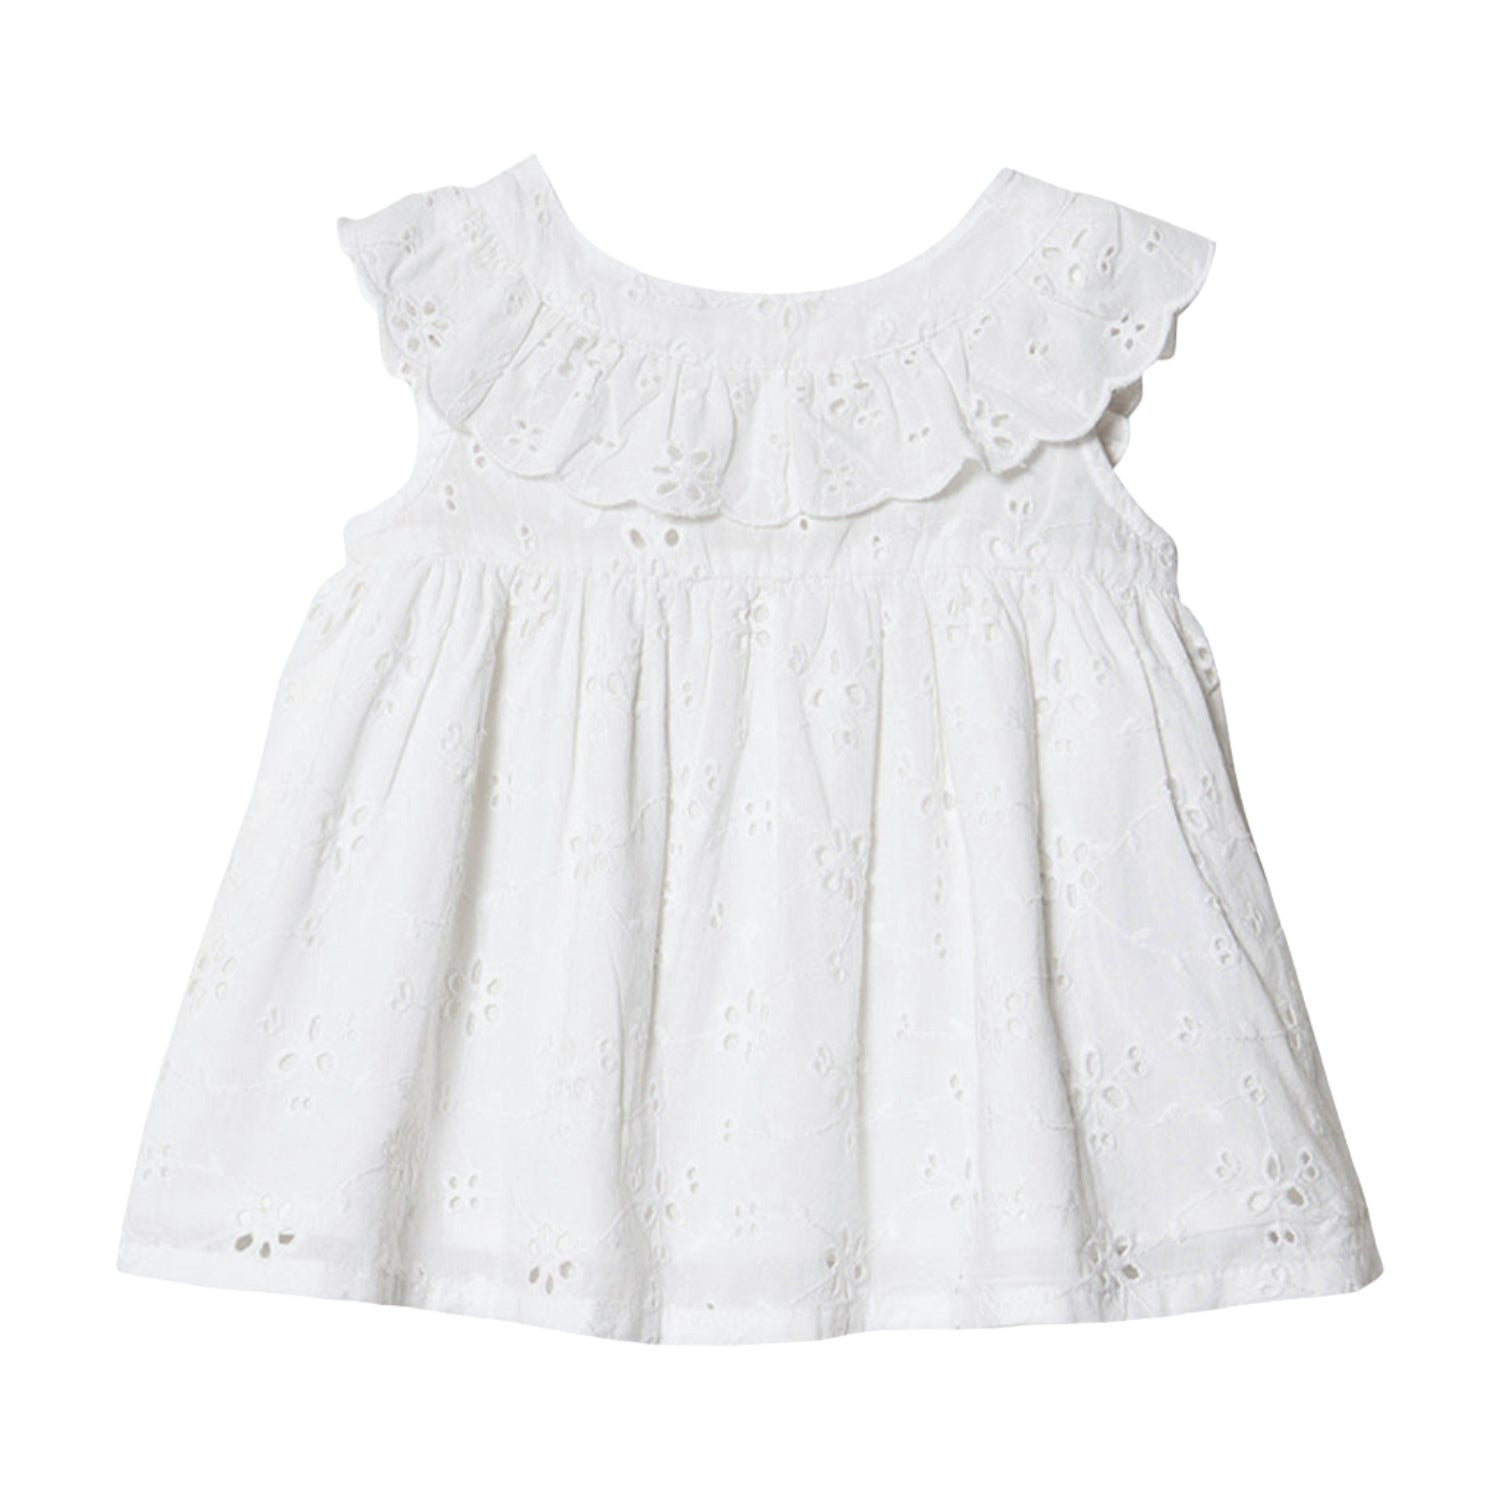 An image of Baby Summer Dress - Kids Dress - Deas Frill Dress - White | MarMar Copenhagen 9M...